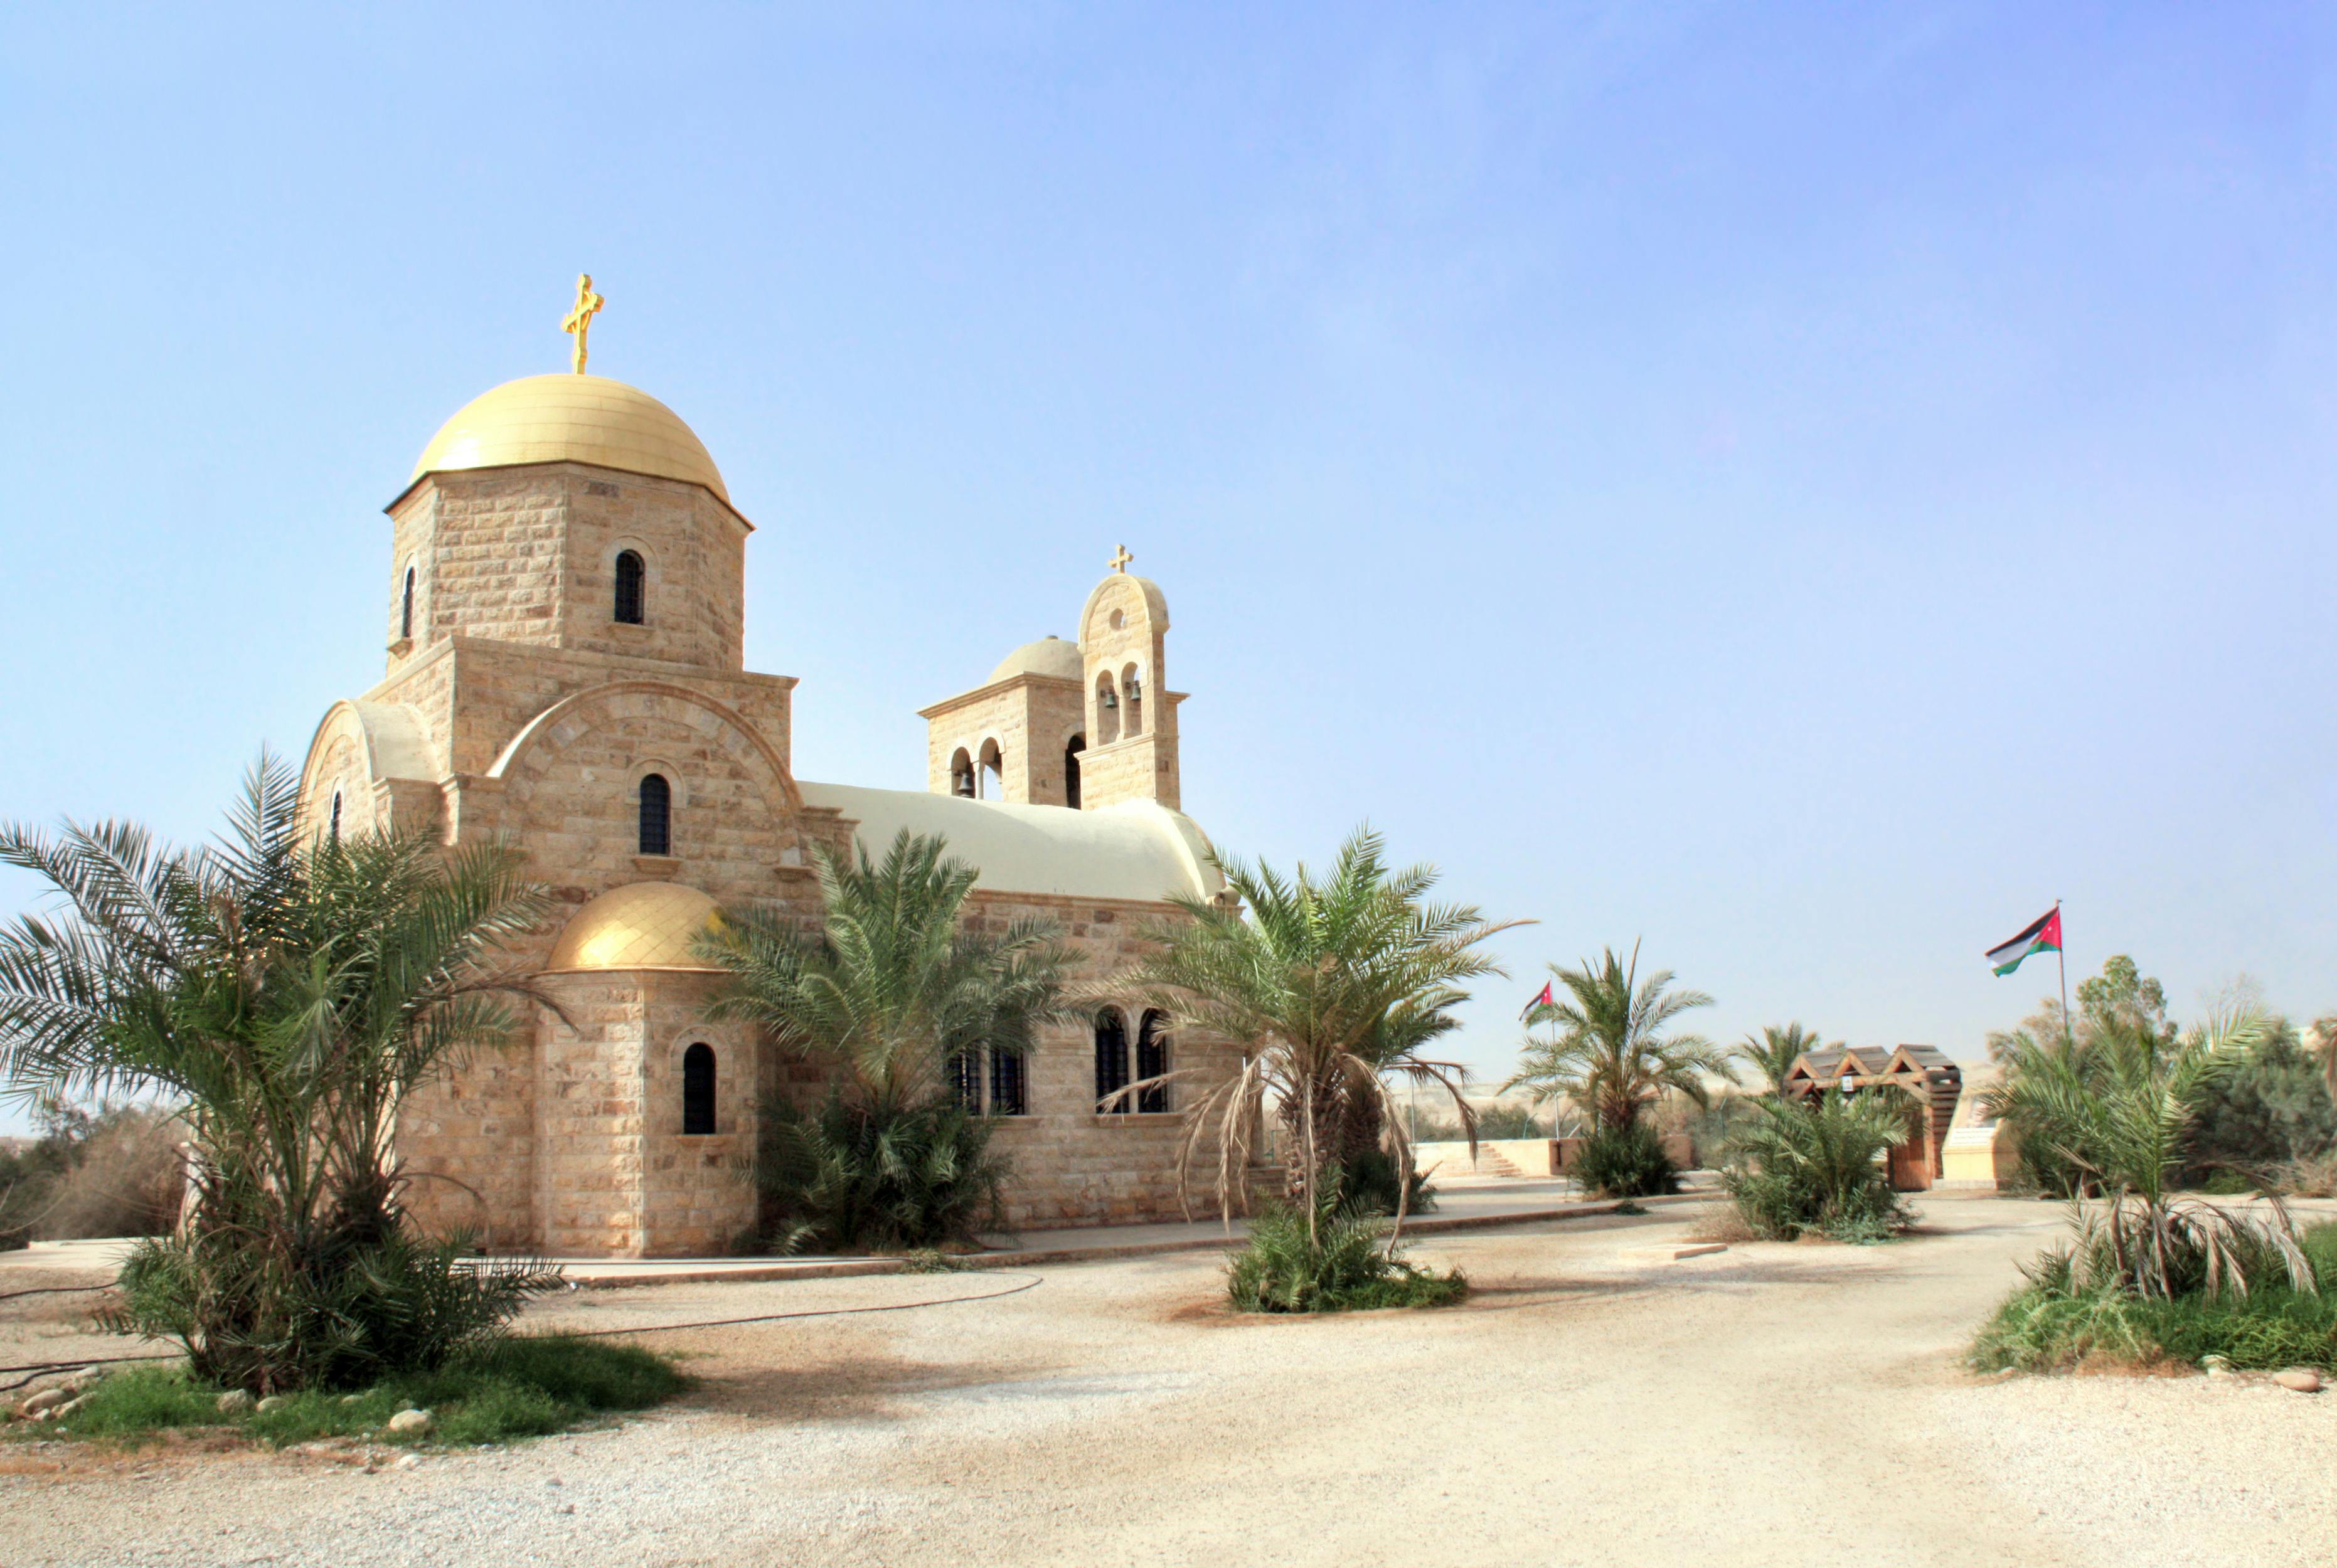 Dagtour naar de doopsite in Bethanië en de stad As-Salt vanuit Amman